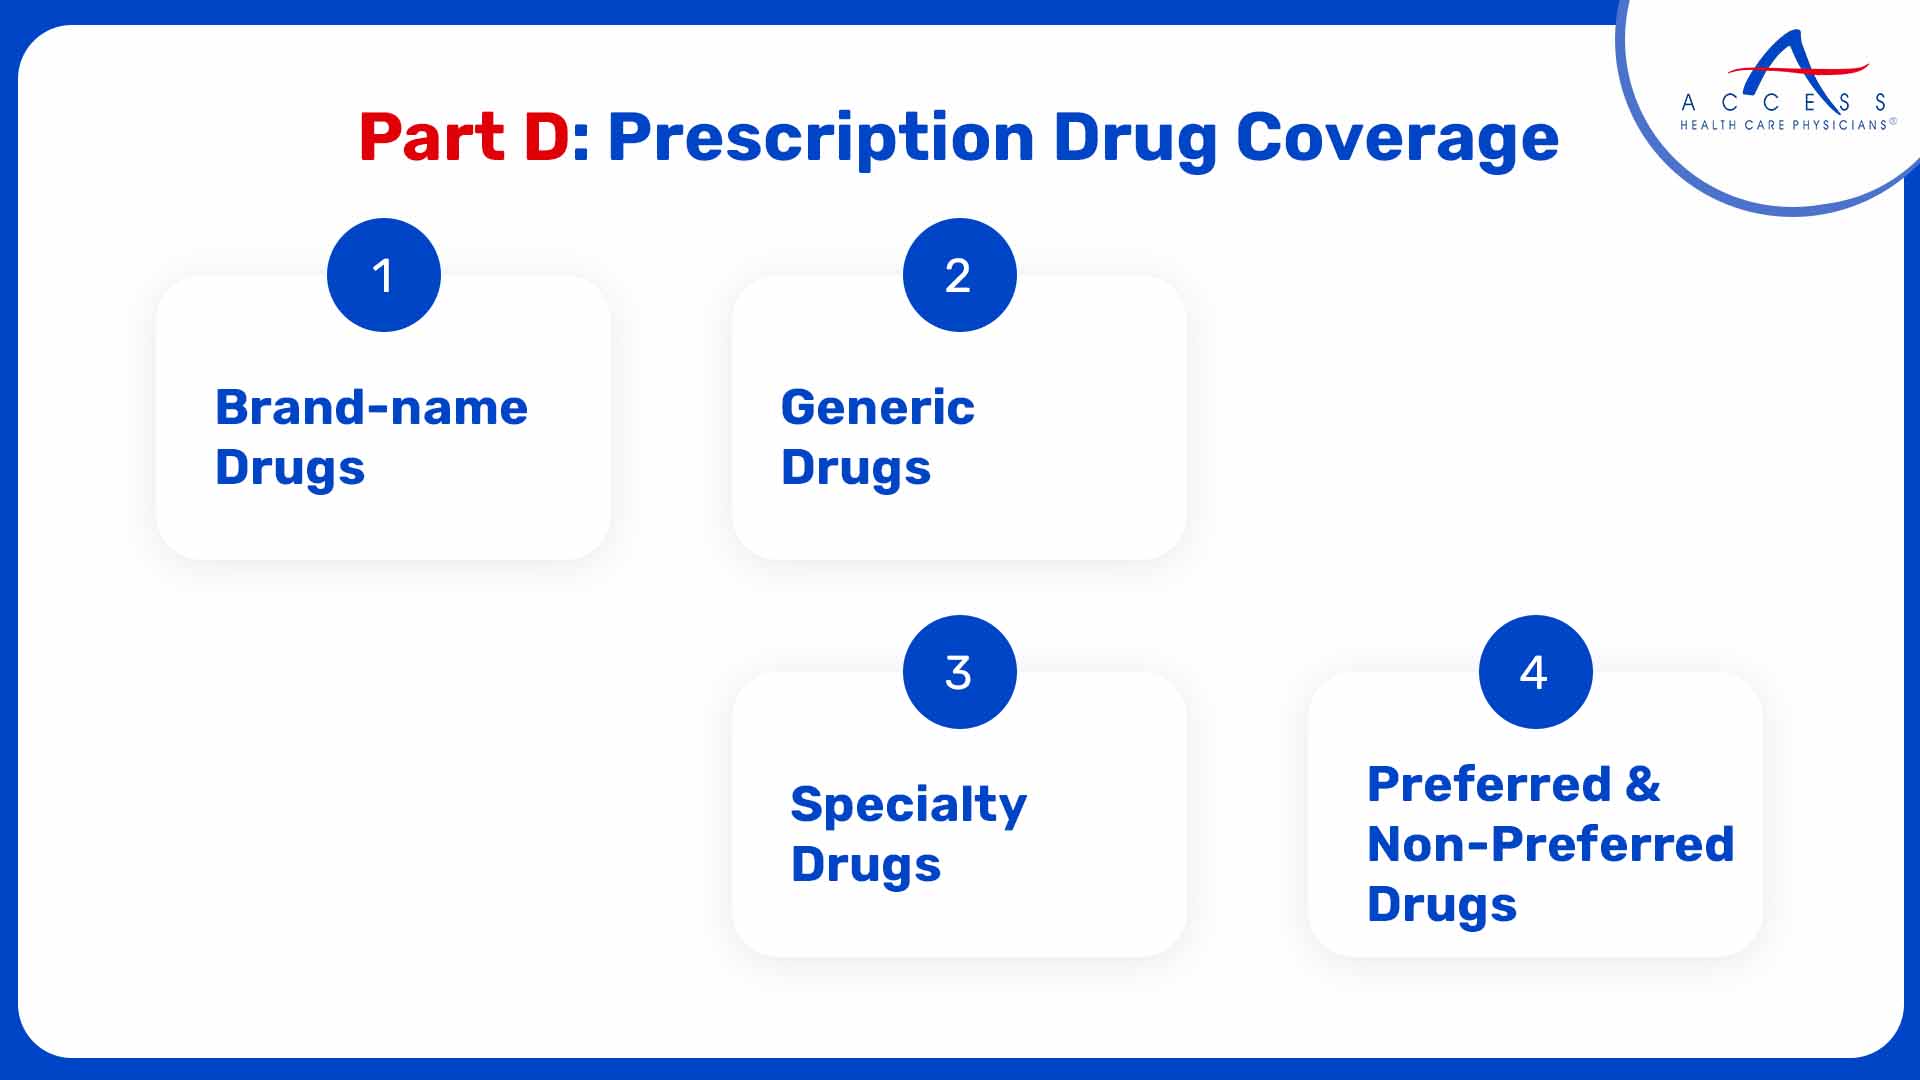 Part D: Prescription Drug Coverage